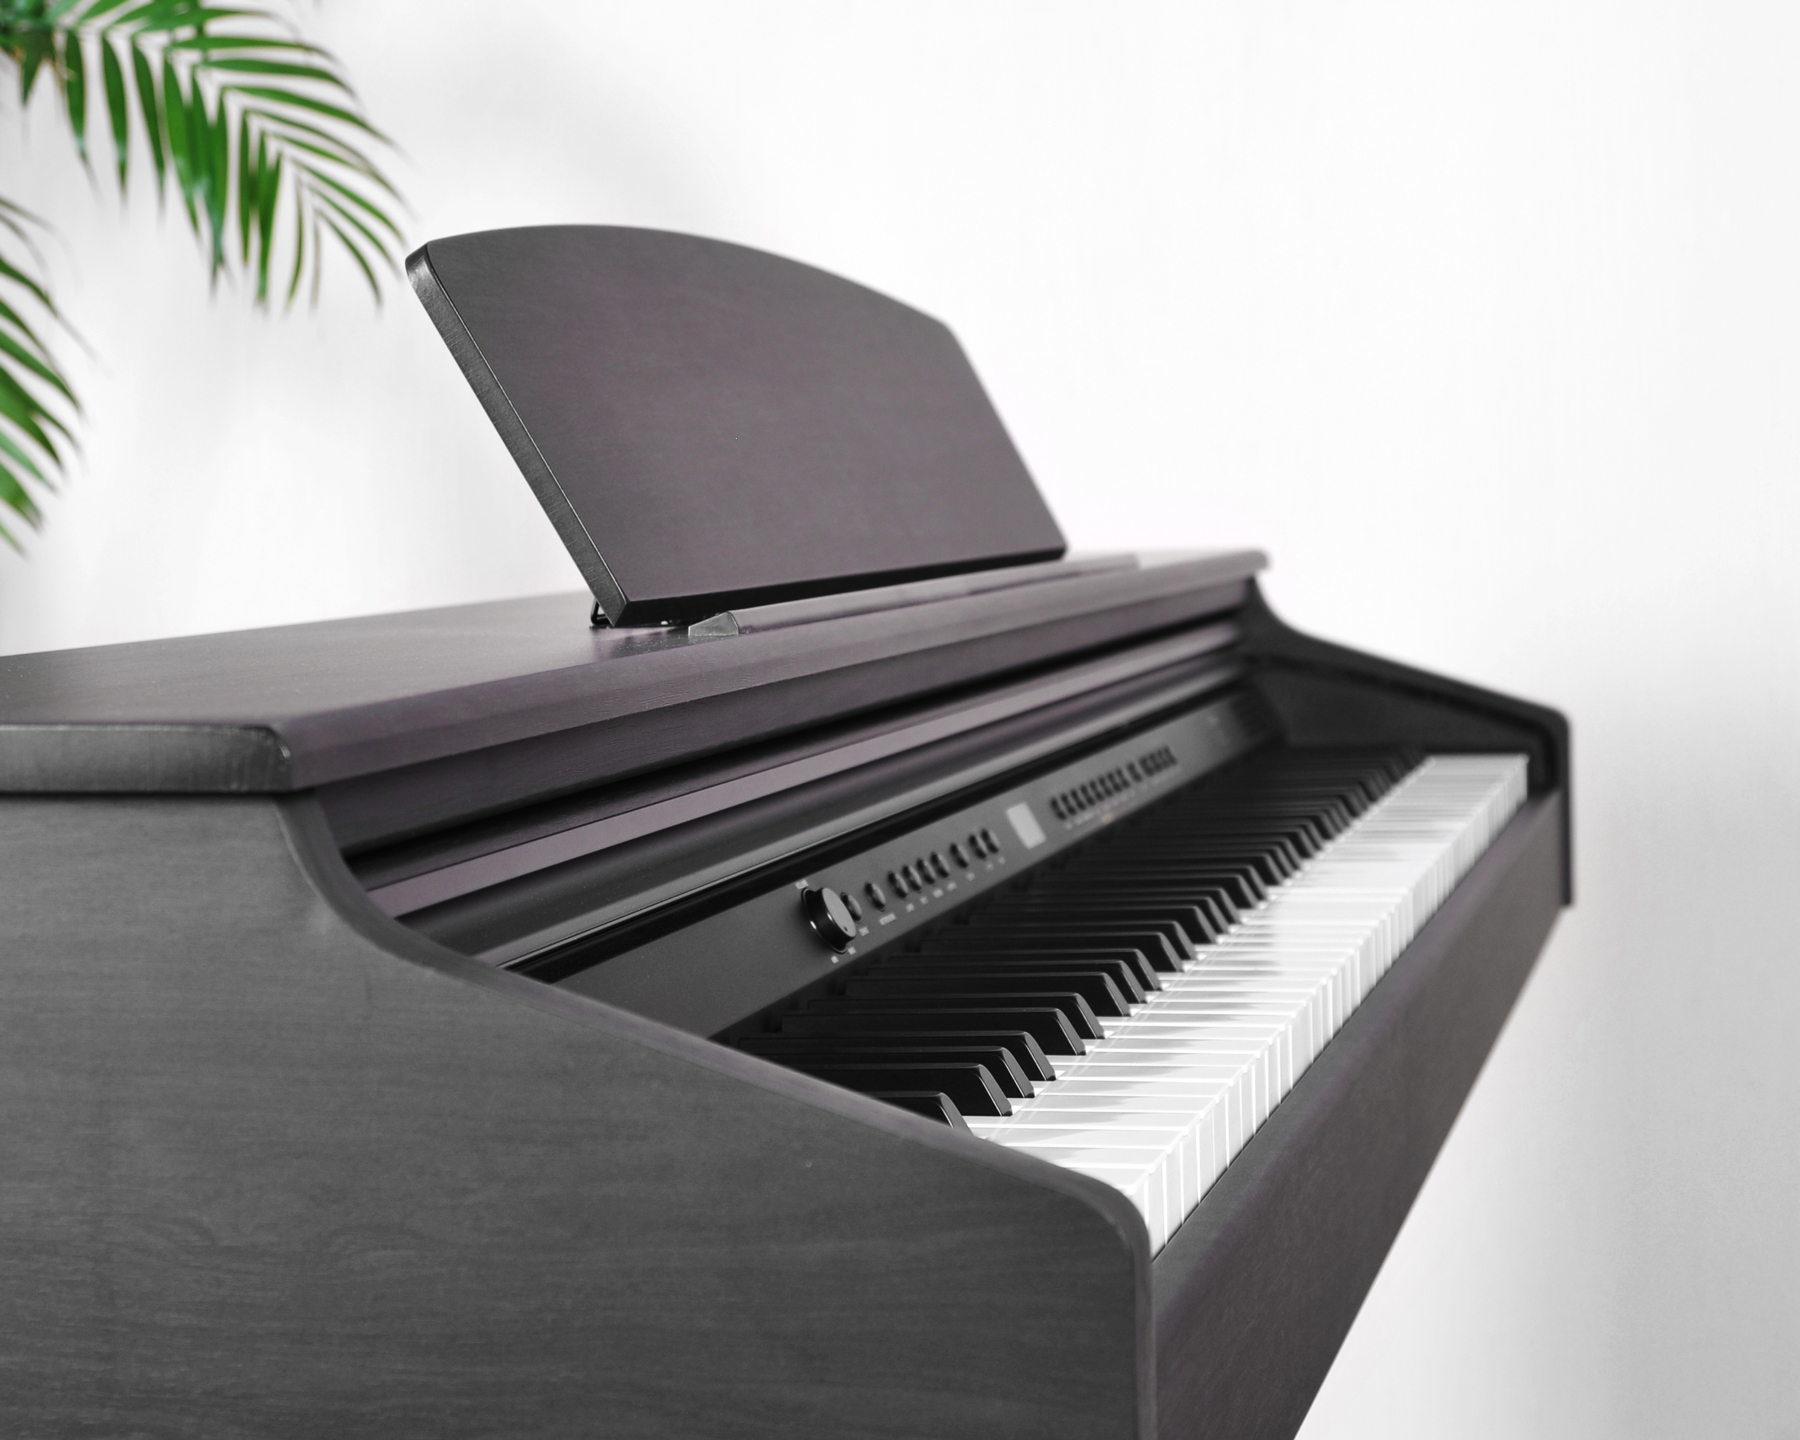 Цифровое пианино Artesia DP-3 RS